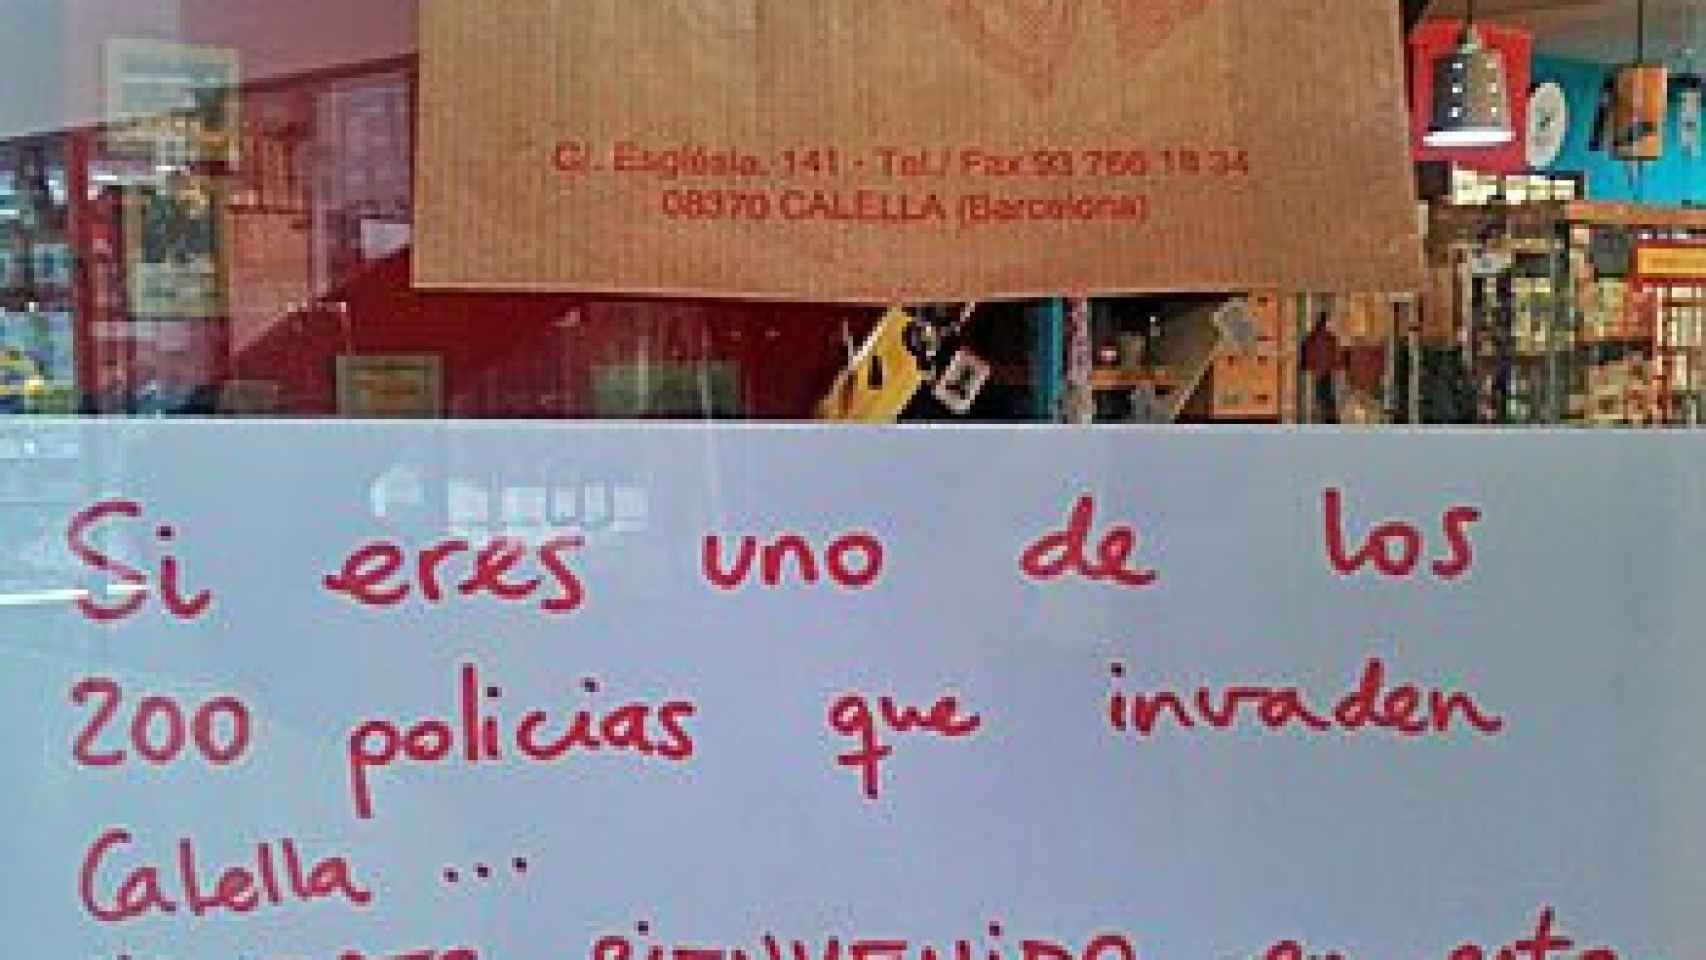 Cartel expuesto en el escaparate de una tienda de Calella, repudiando a los agentes de la Policía Nacional